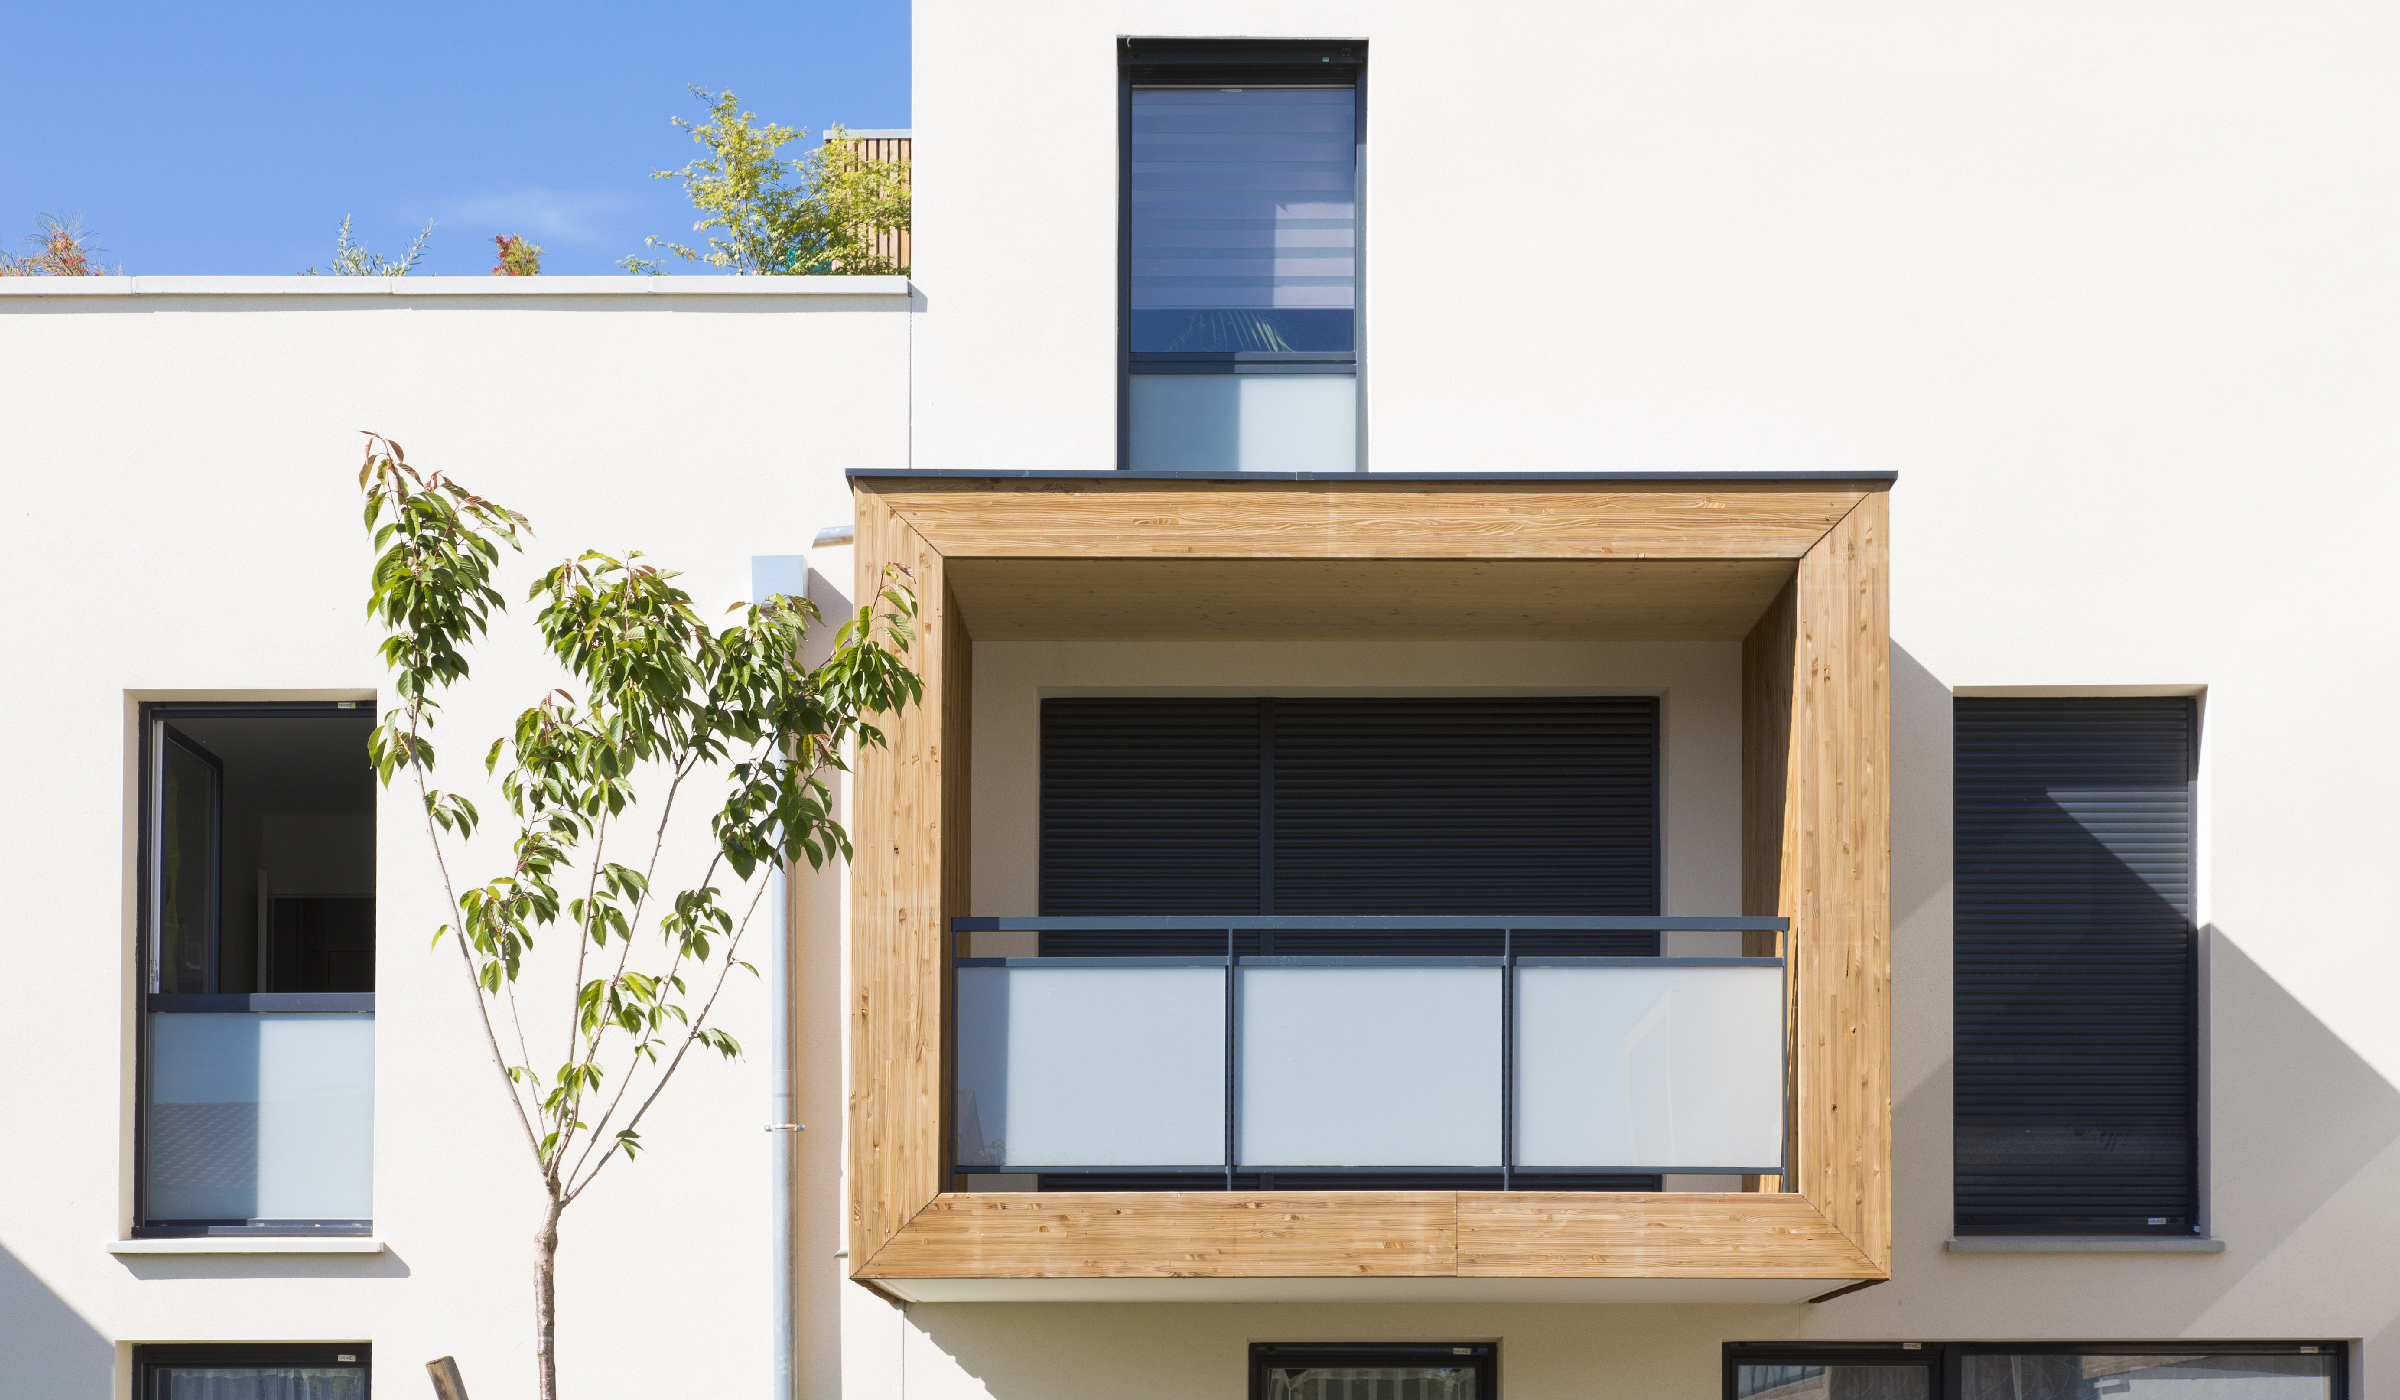 Photographie détail d'un balcon encadré de bois qui sort de la facade blanche au soleil